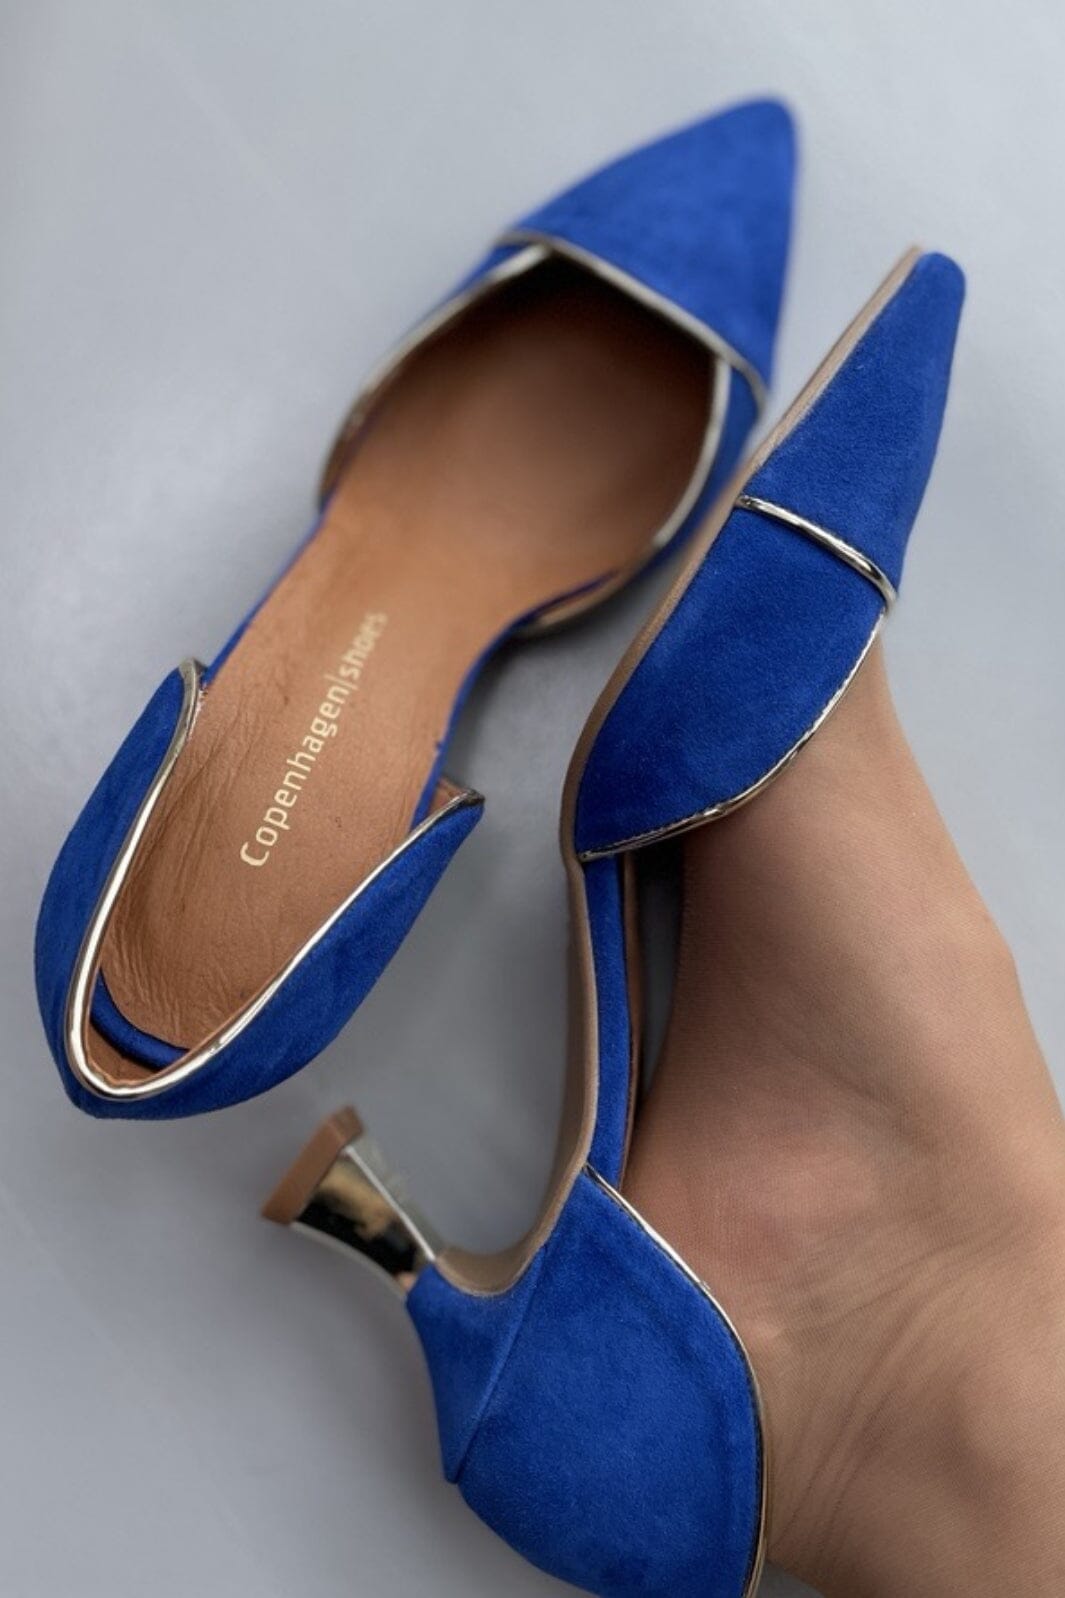 Copenhagen Shoes - Paris - Electric Blue - 1202 Electric Blue Stiletter 